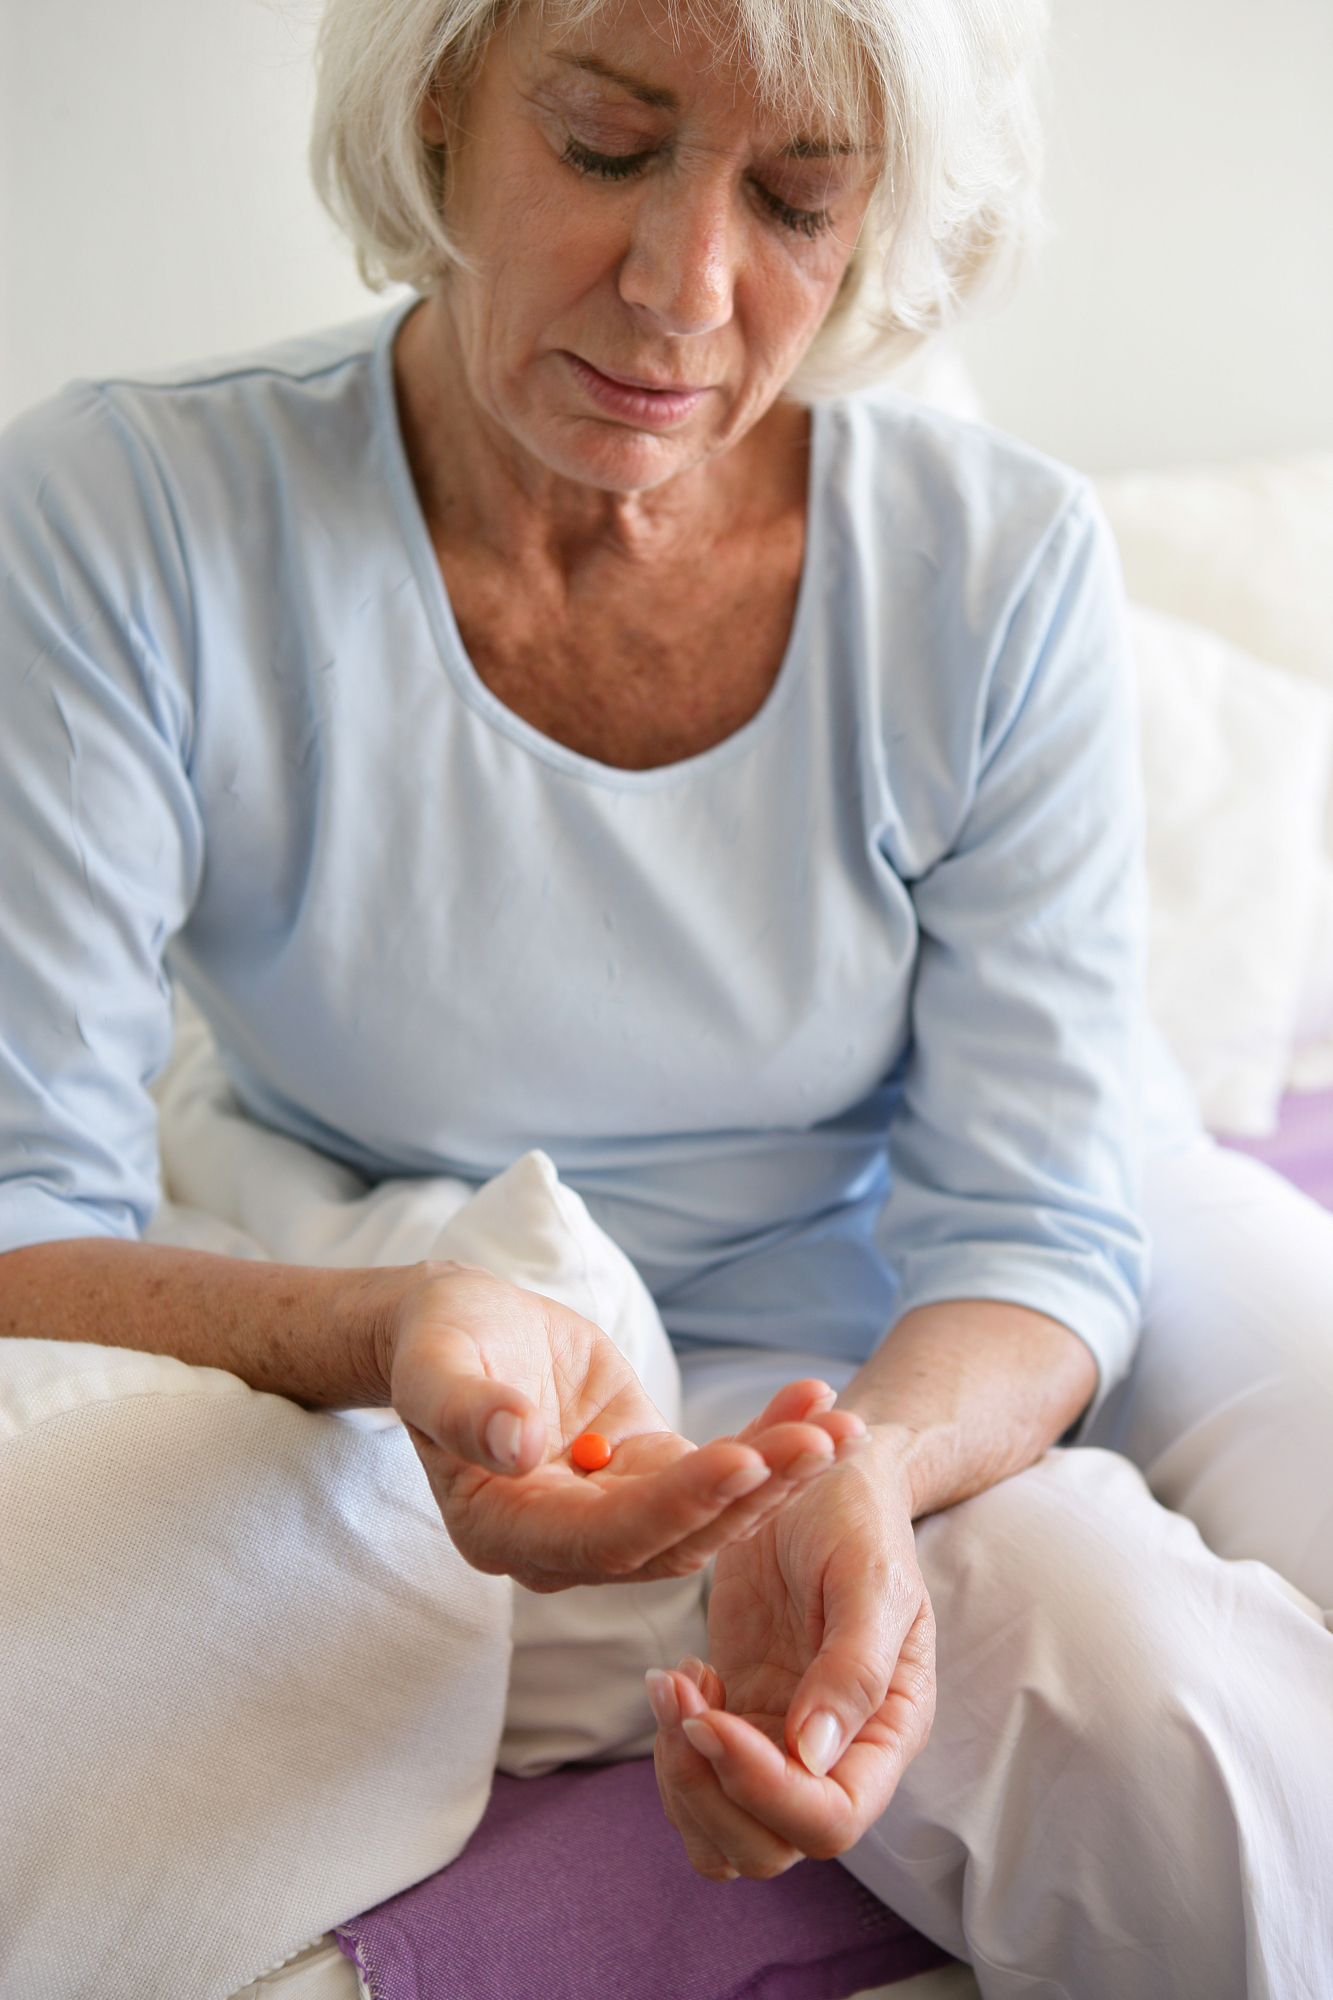 Elderly woman taking a pill